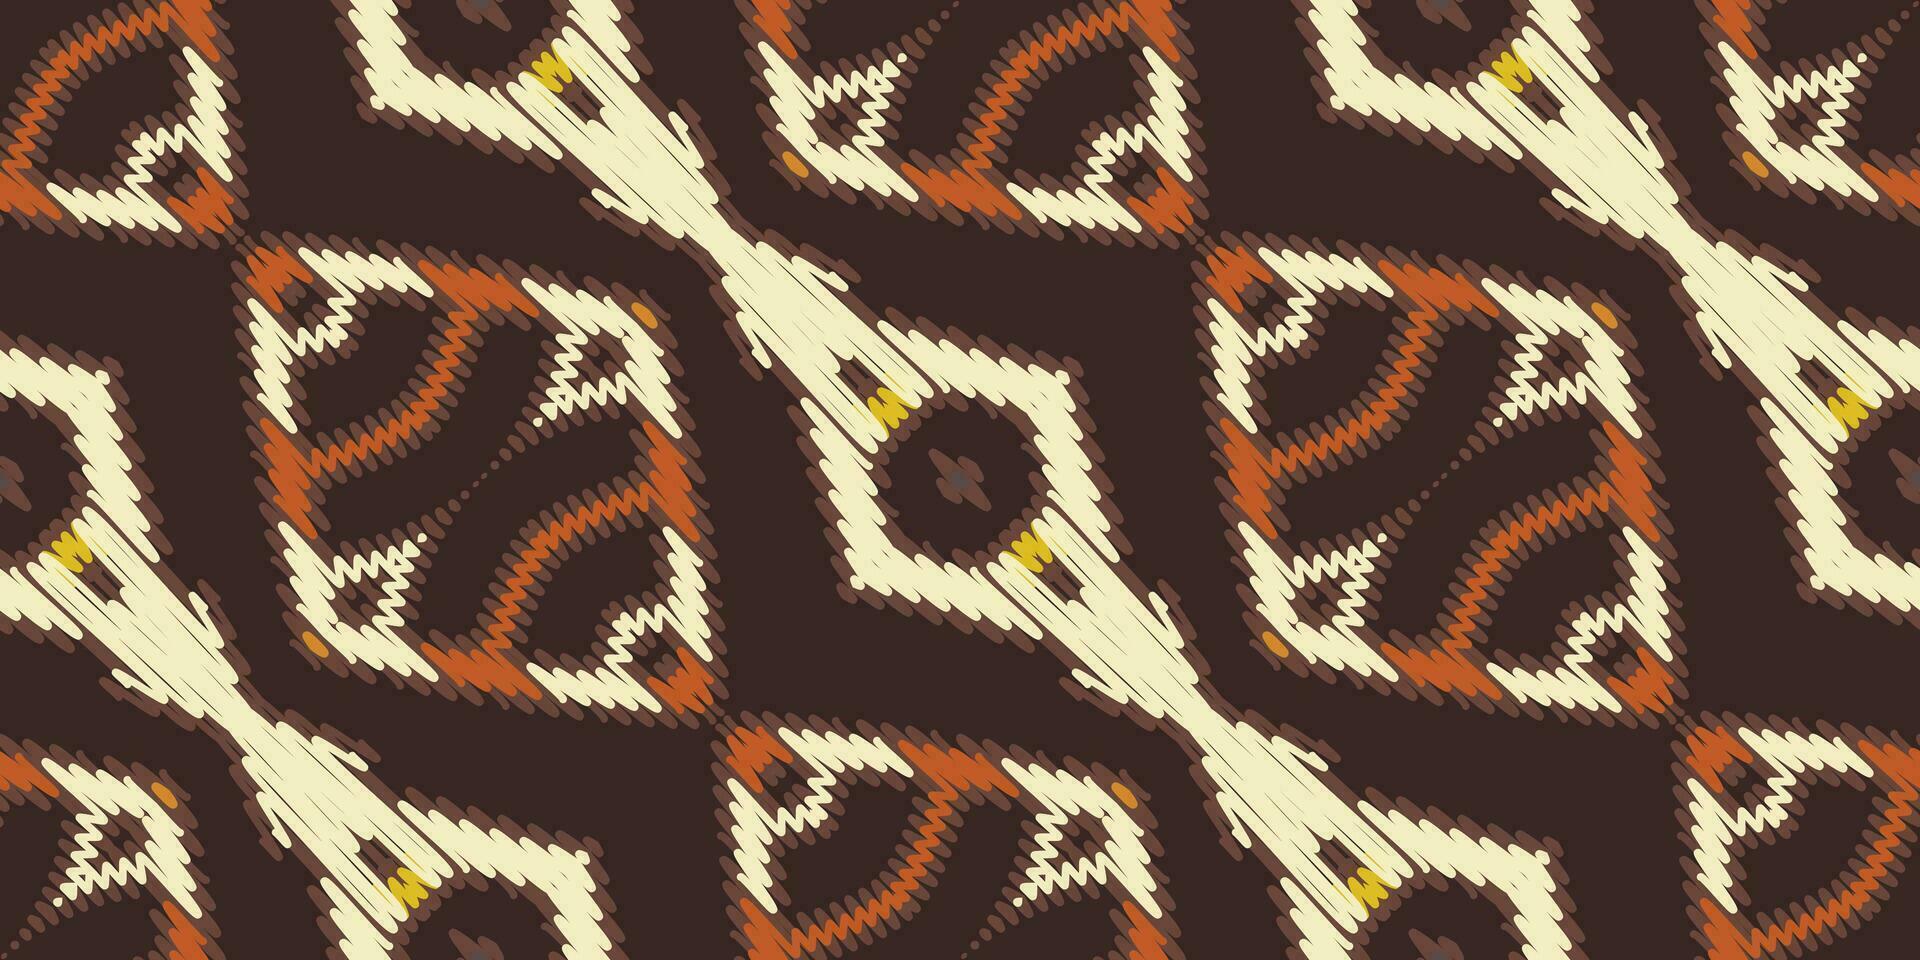 silke tyg patola sari mönster sömlös scandinavian mönster motiv broderi, ikat broderi vektor design för skriva ut spets mönster turkiska keramisk gammal egypten konst jacquard mönster